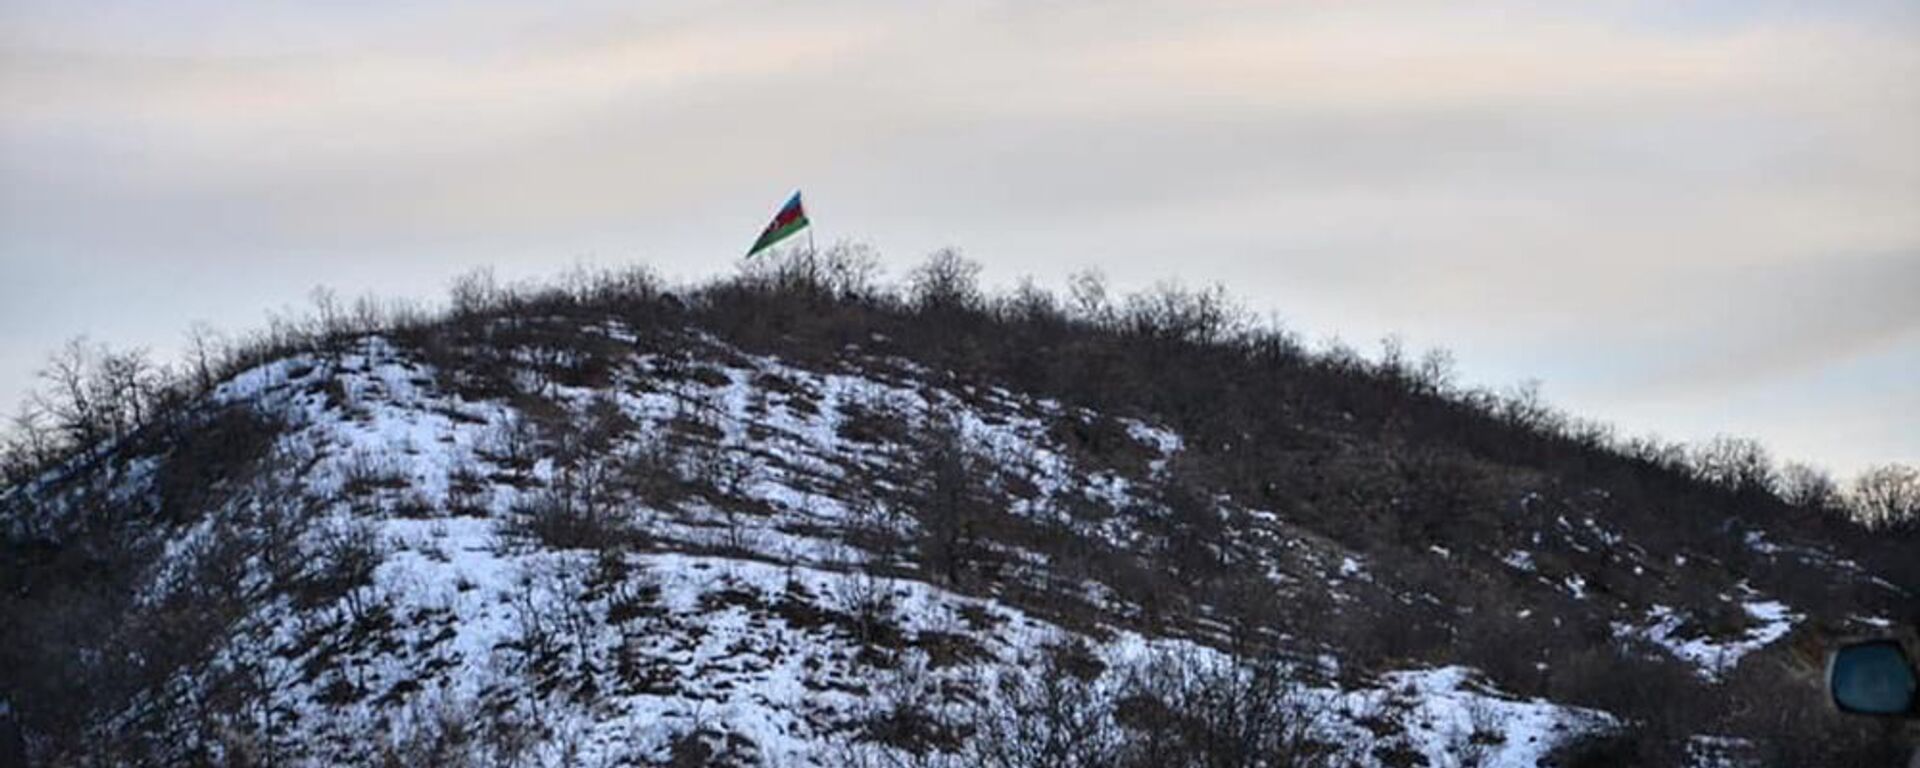 Флаг Азербайджана на дороге, ведущей из города Капана в село Чакатен (2 февраля 2021).  - Sputnik Армения, 1920, 11.02.2021